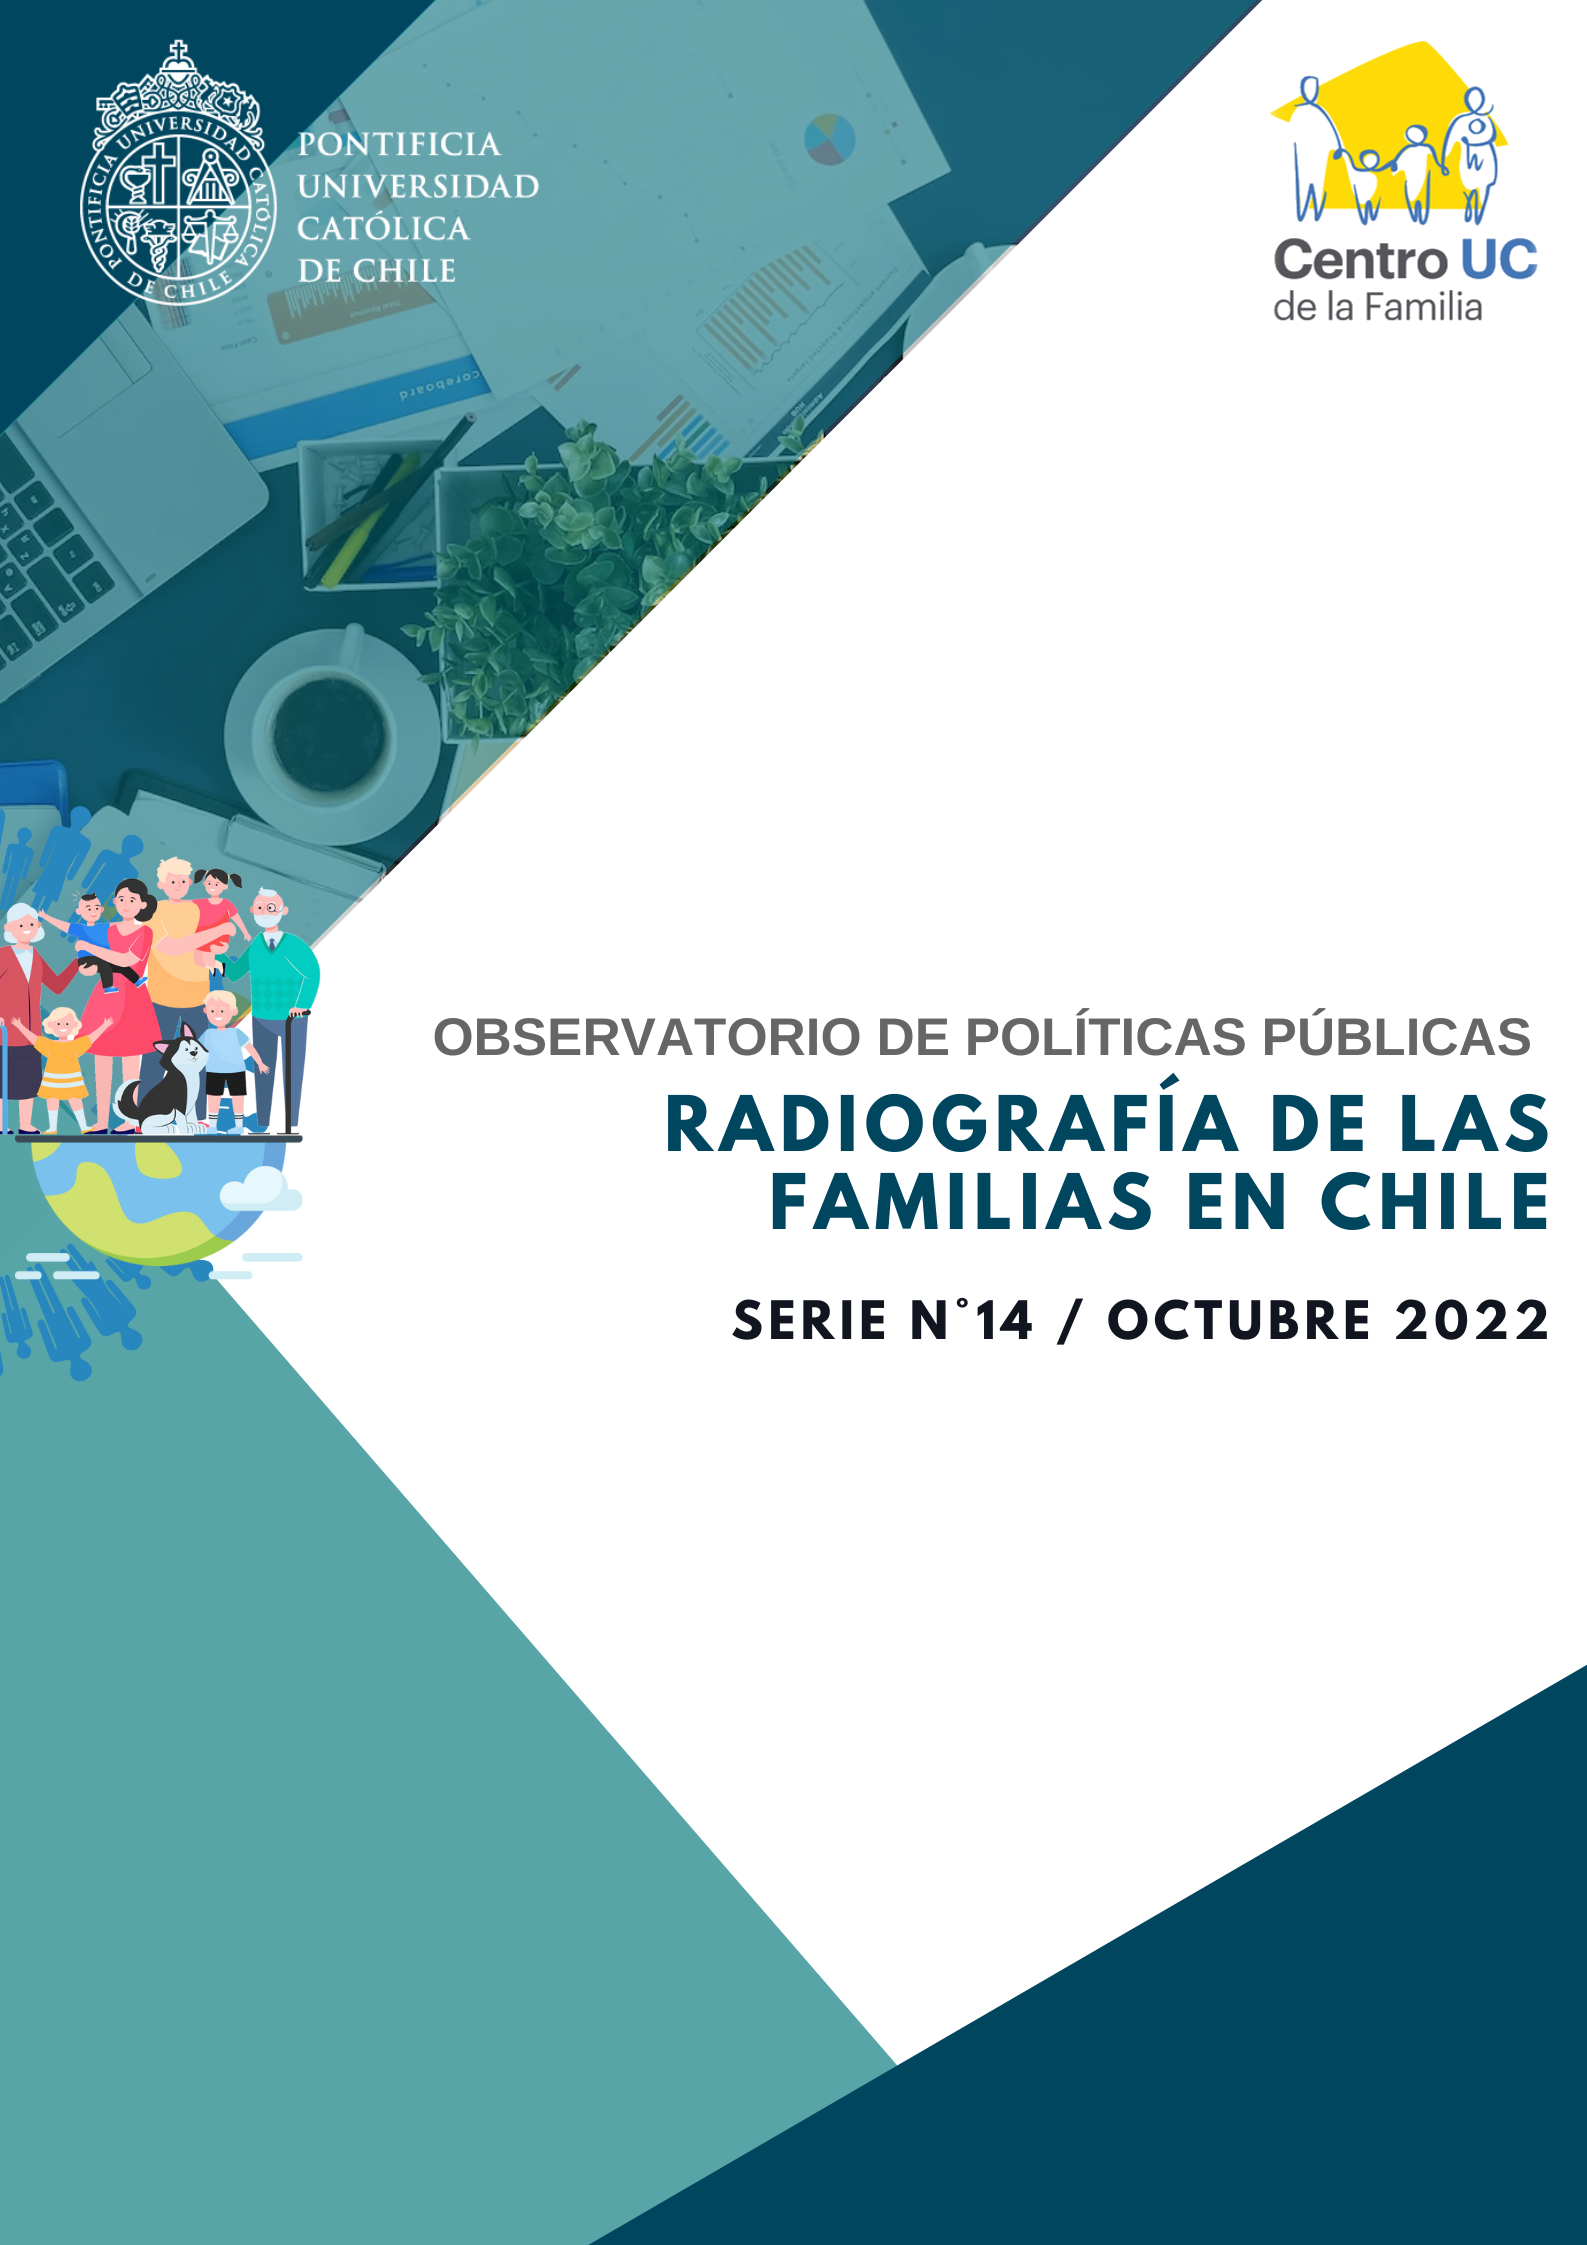 Observatorio de Políticas Públicas: Radiografía de las familias en Chile (Octubre 2022)